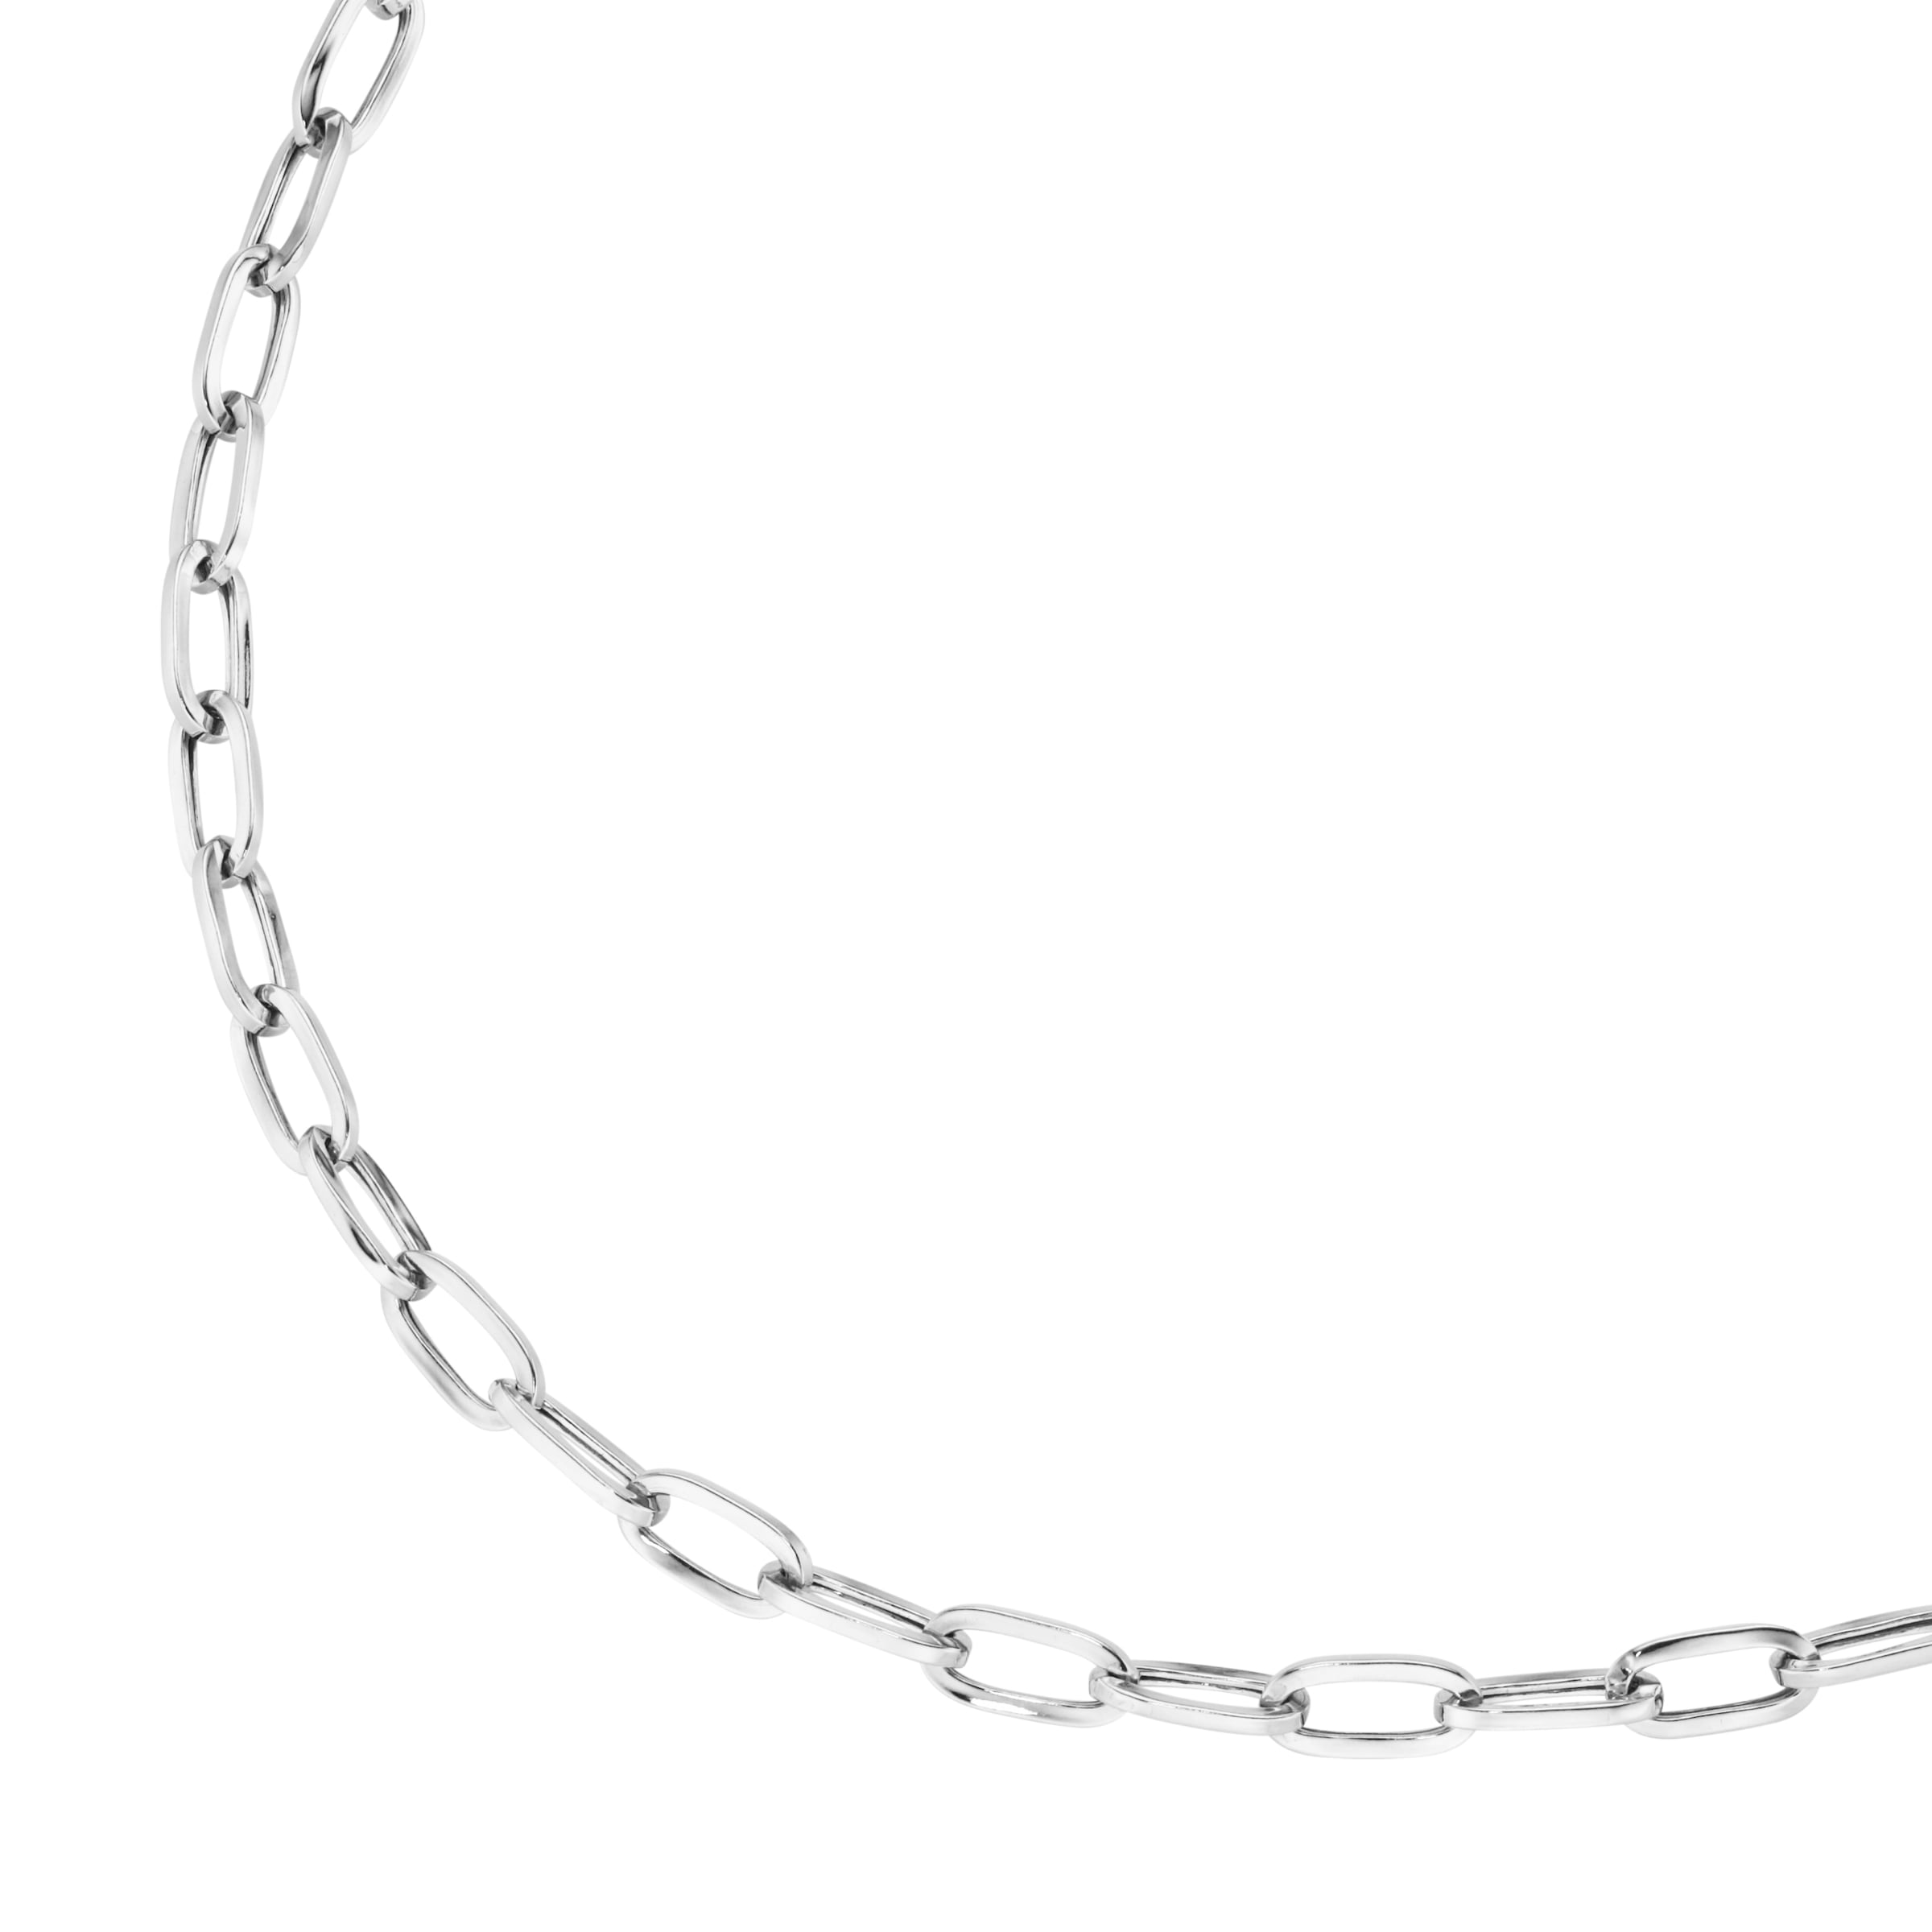 »Kette Silber Silberkette bei Smart Jewel oval, Glieder 925« kaufen OTTO